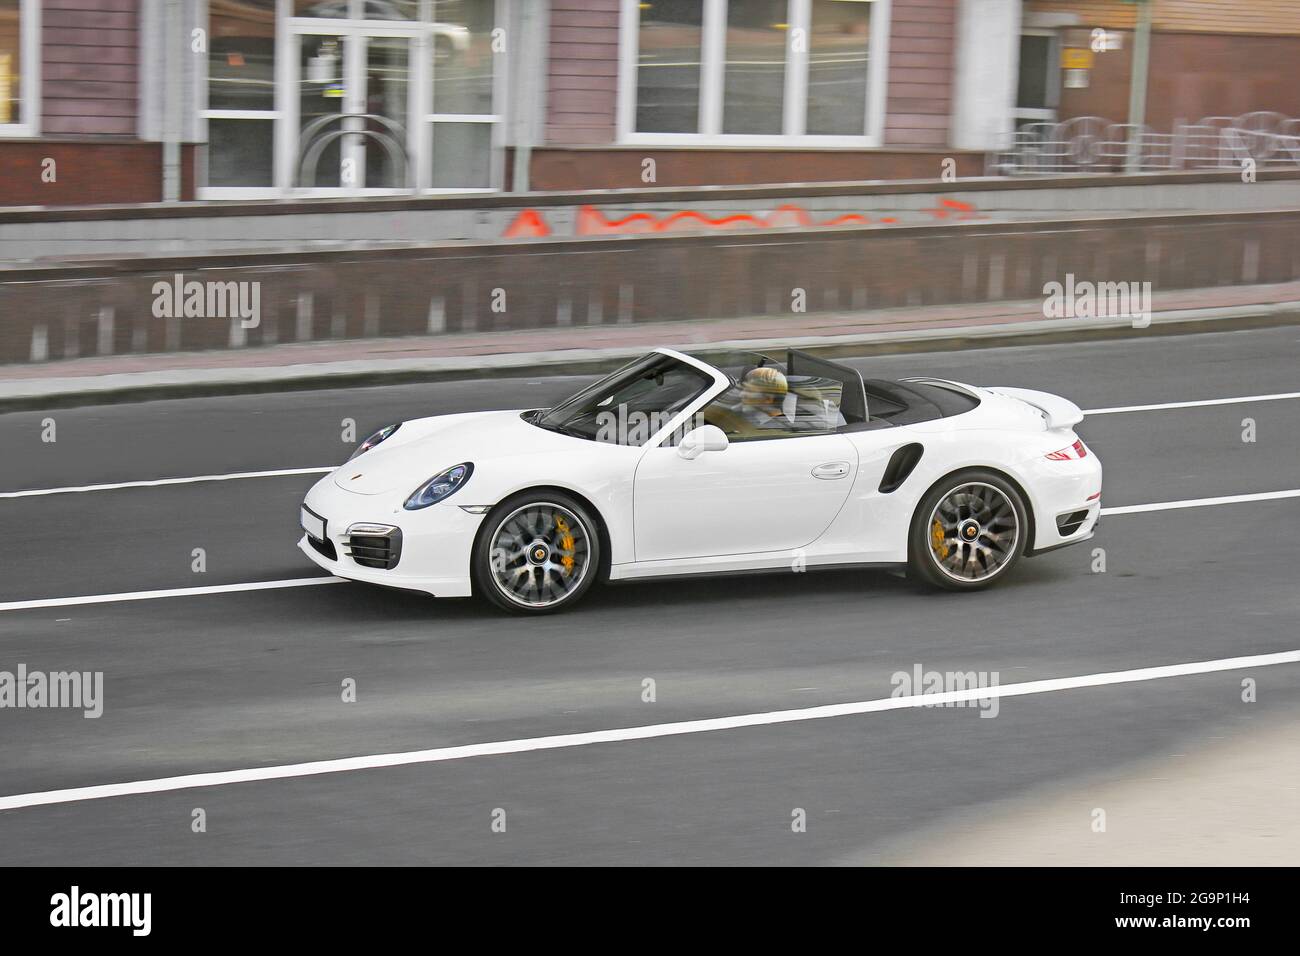 Kiev, Ukraine - 3 septembre 2017: Convertible blanc en mouvement. Porsche  911 Turbo S Cabriolet (991) en mouvement Photo Stock - Alamy